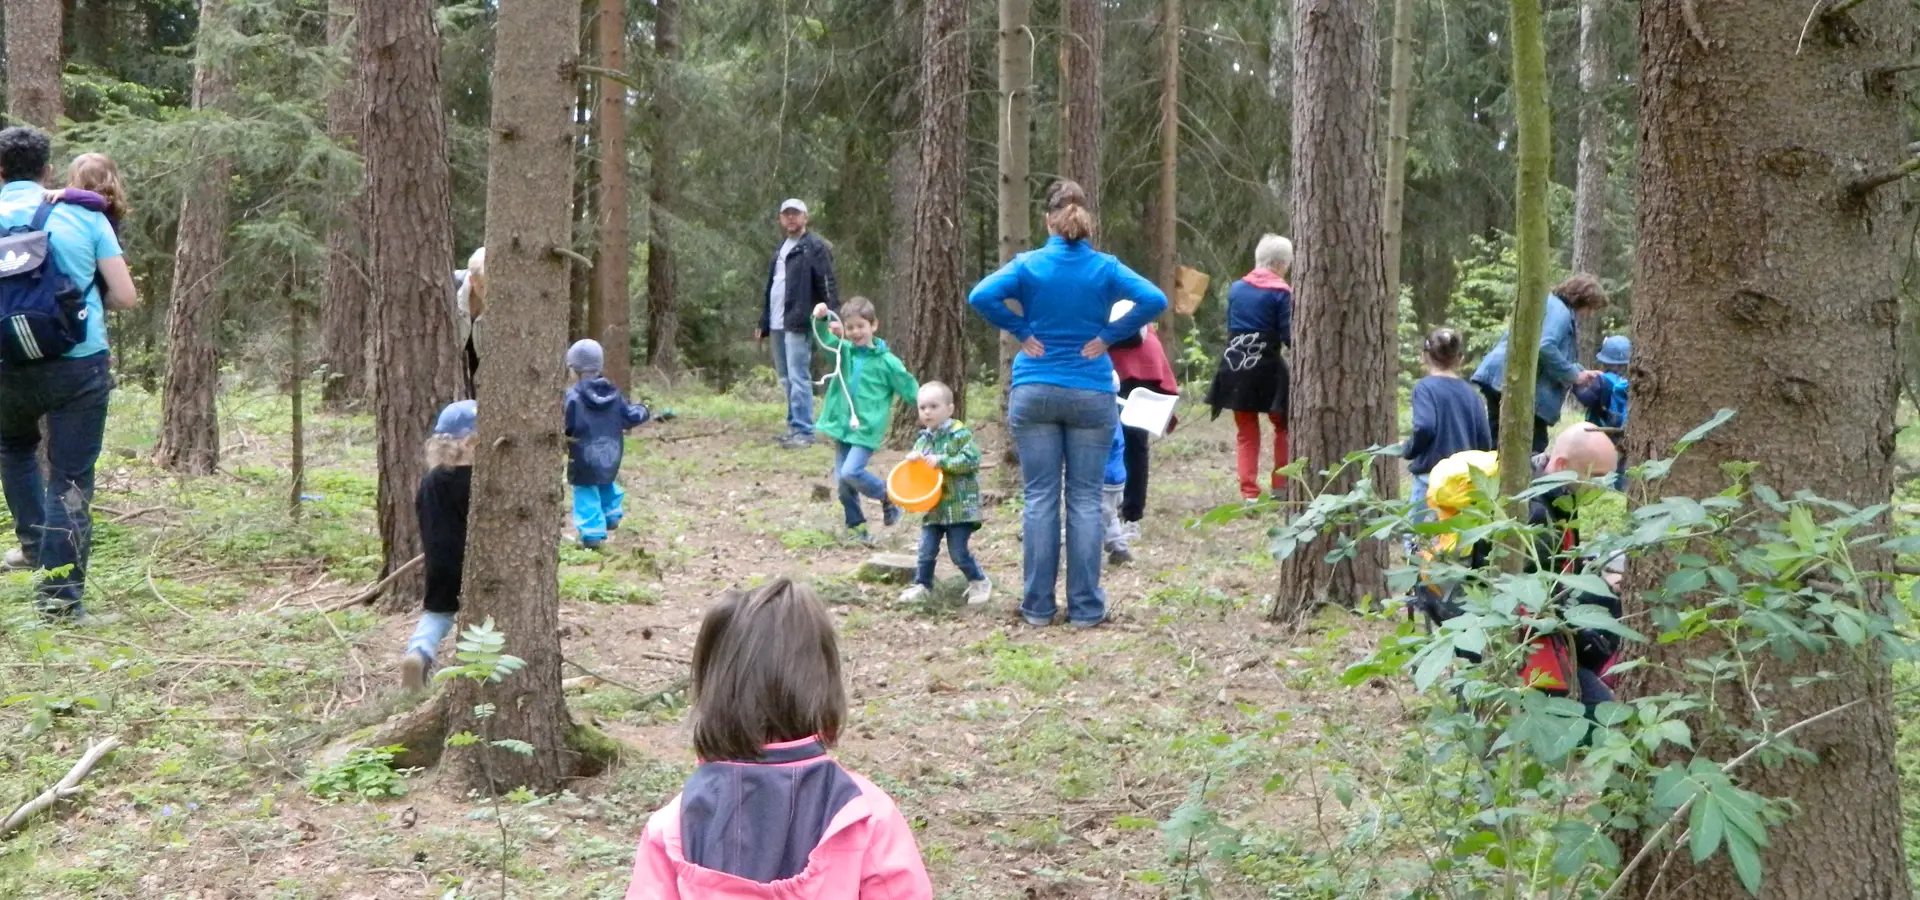 Gruppe von Menschen und Kindern im Wald bei Outdoor-Aktivitäten.